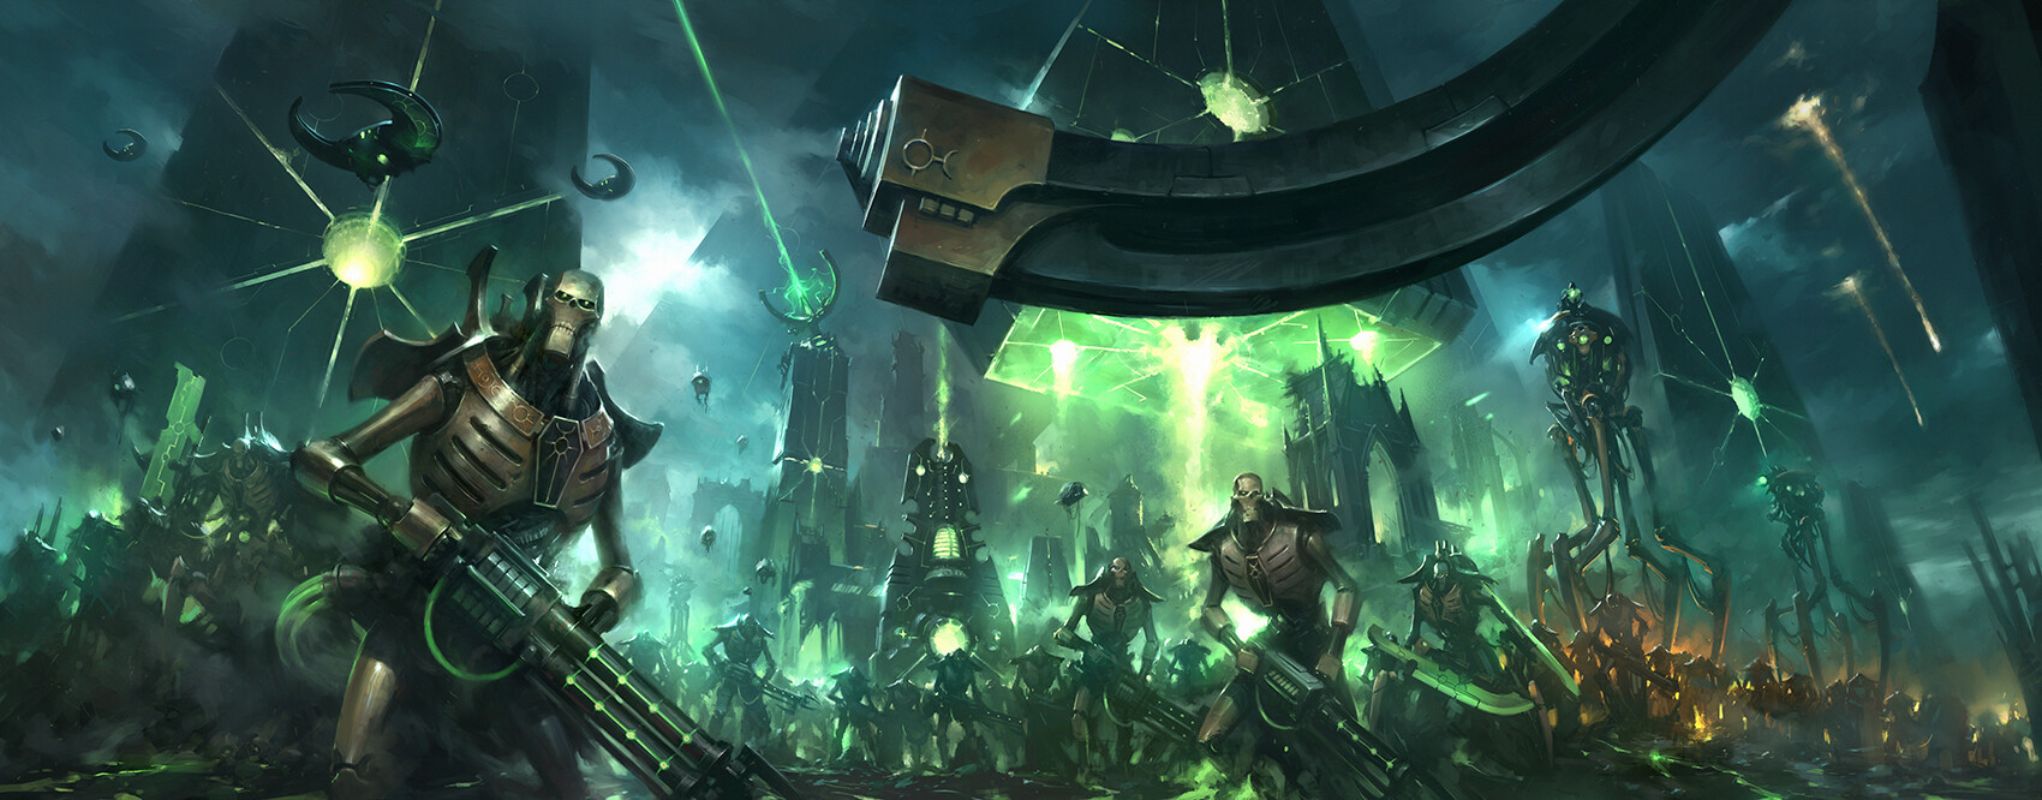 Warhammer 40 000 Warhammer Warhammer 30 000 City Necrons Green Black Science Fiction Video Games Vid 2042x800